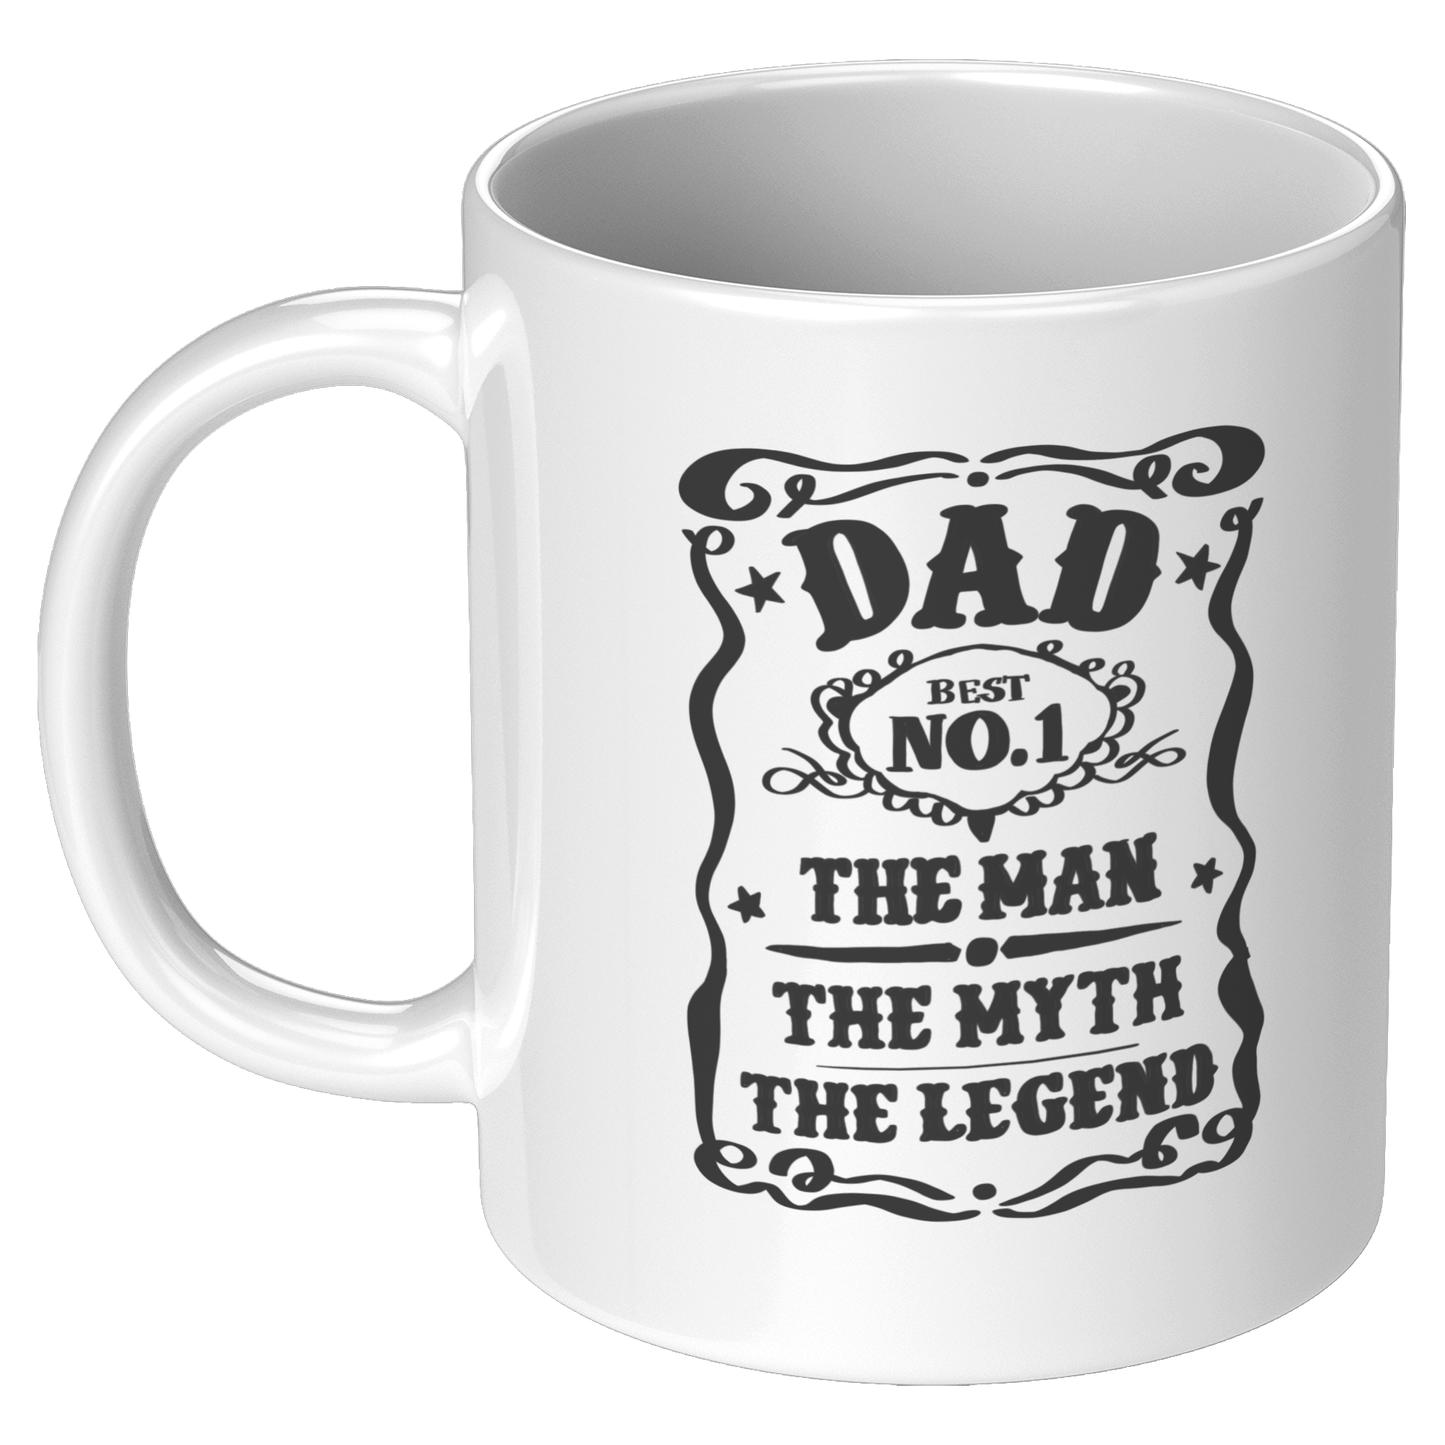 Dad - The Man The Myth The Legend Ceramic White Mug - 11oz and 15oz